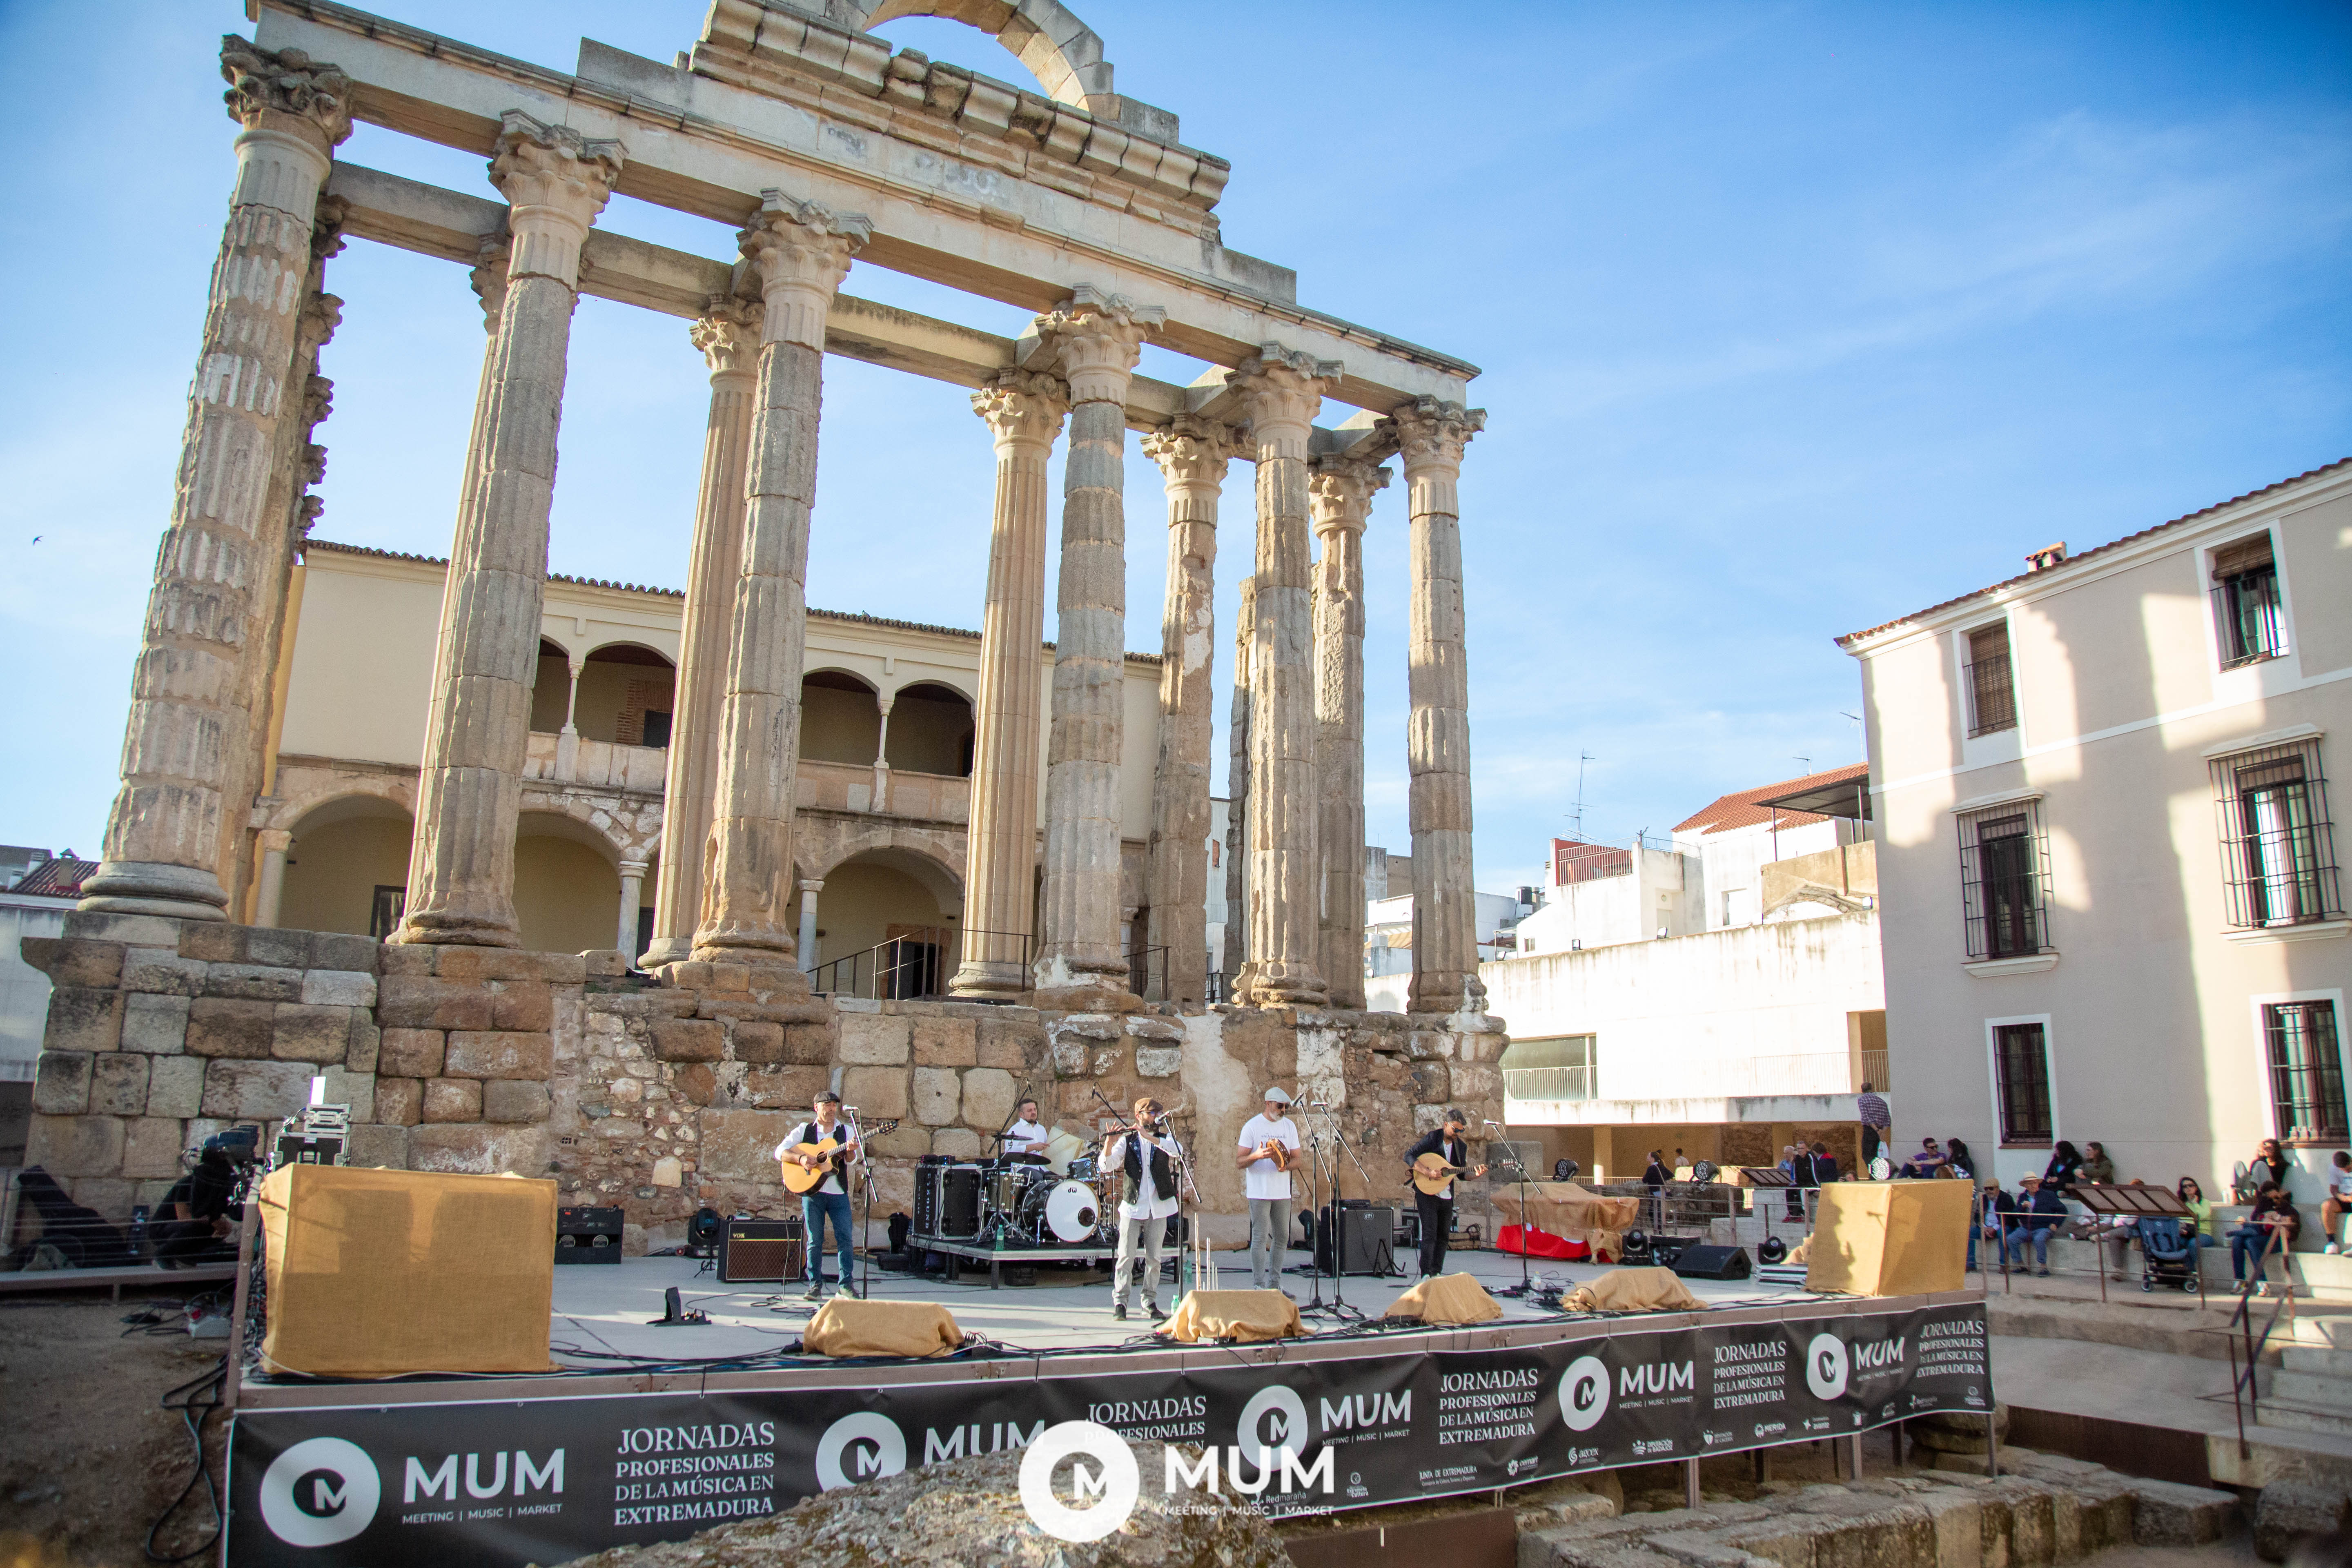 Image 3 of article Las VIII Jornadas Profesionales de la Música en Extremadura (#MUM24) abre convocatoria para recibir propuestas de grupos y artistas